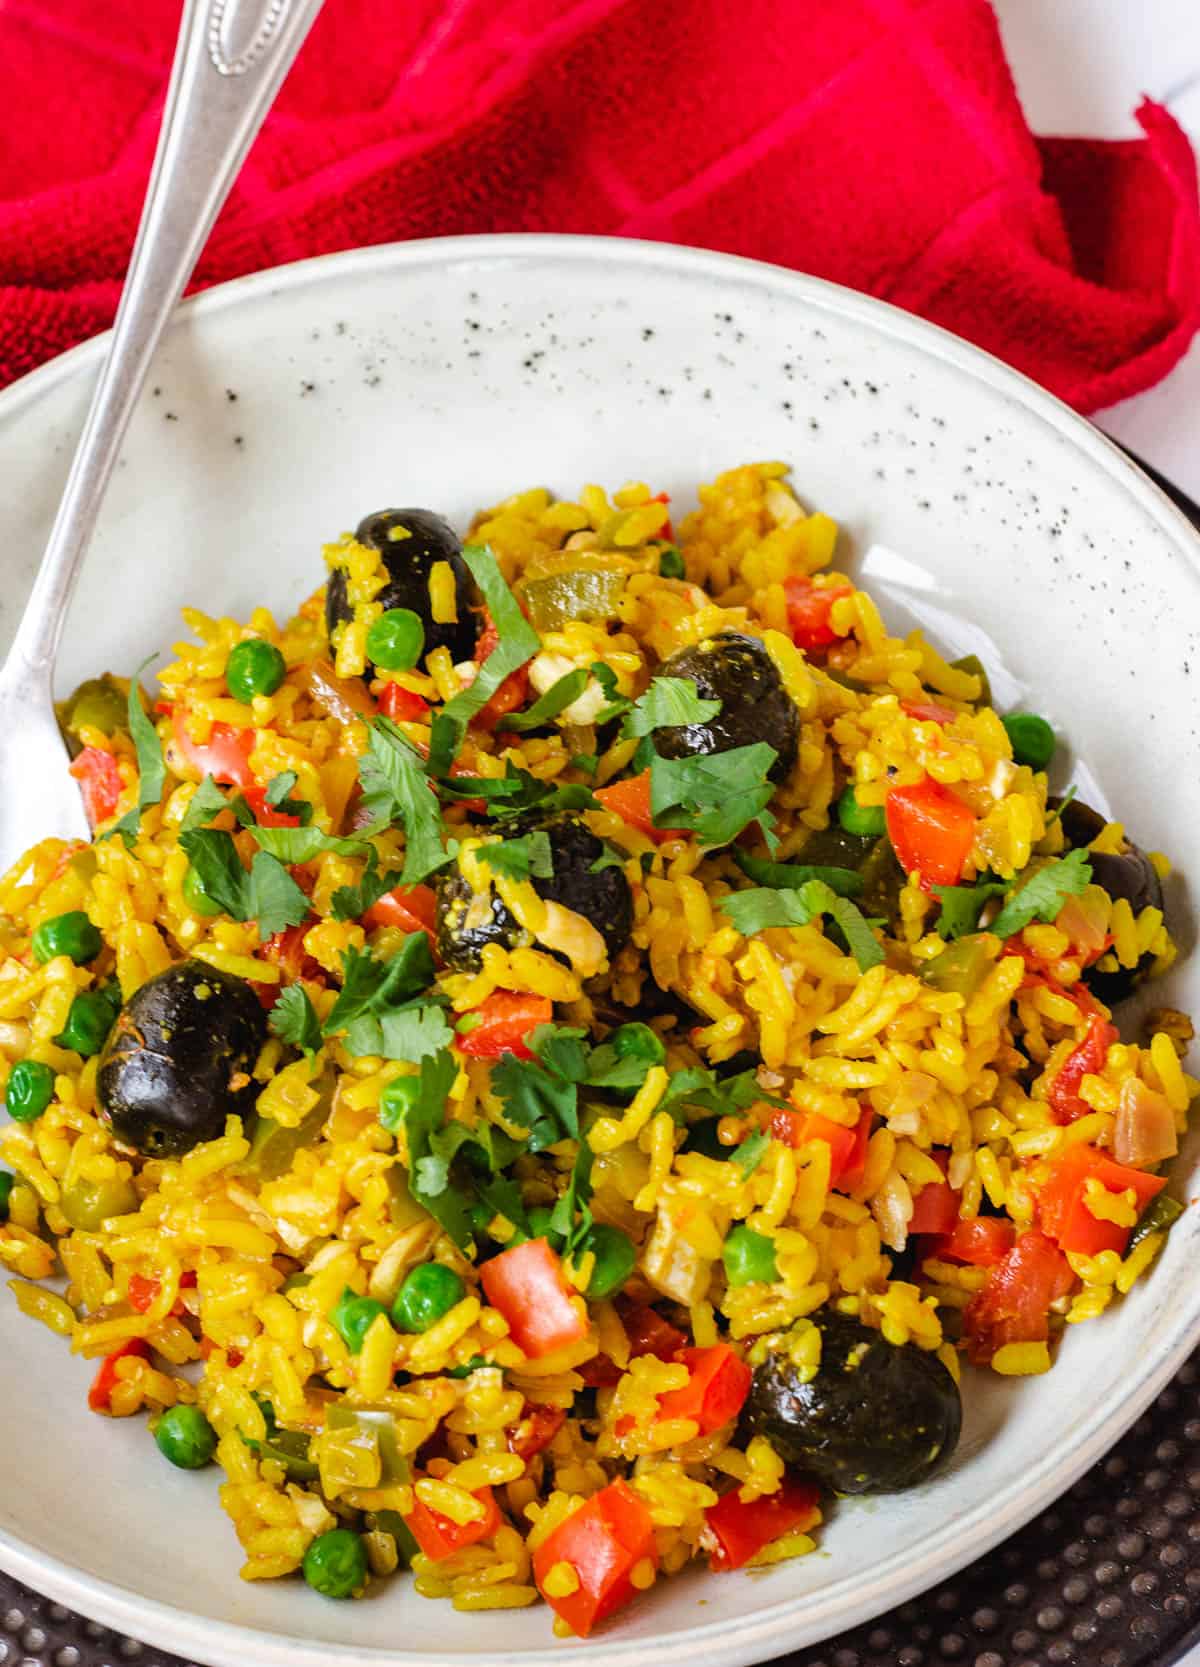 veganuary recipes: vegan paella in gray bowl